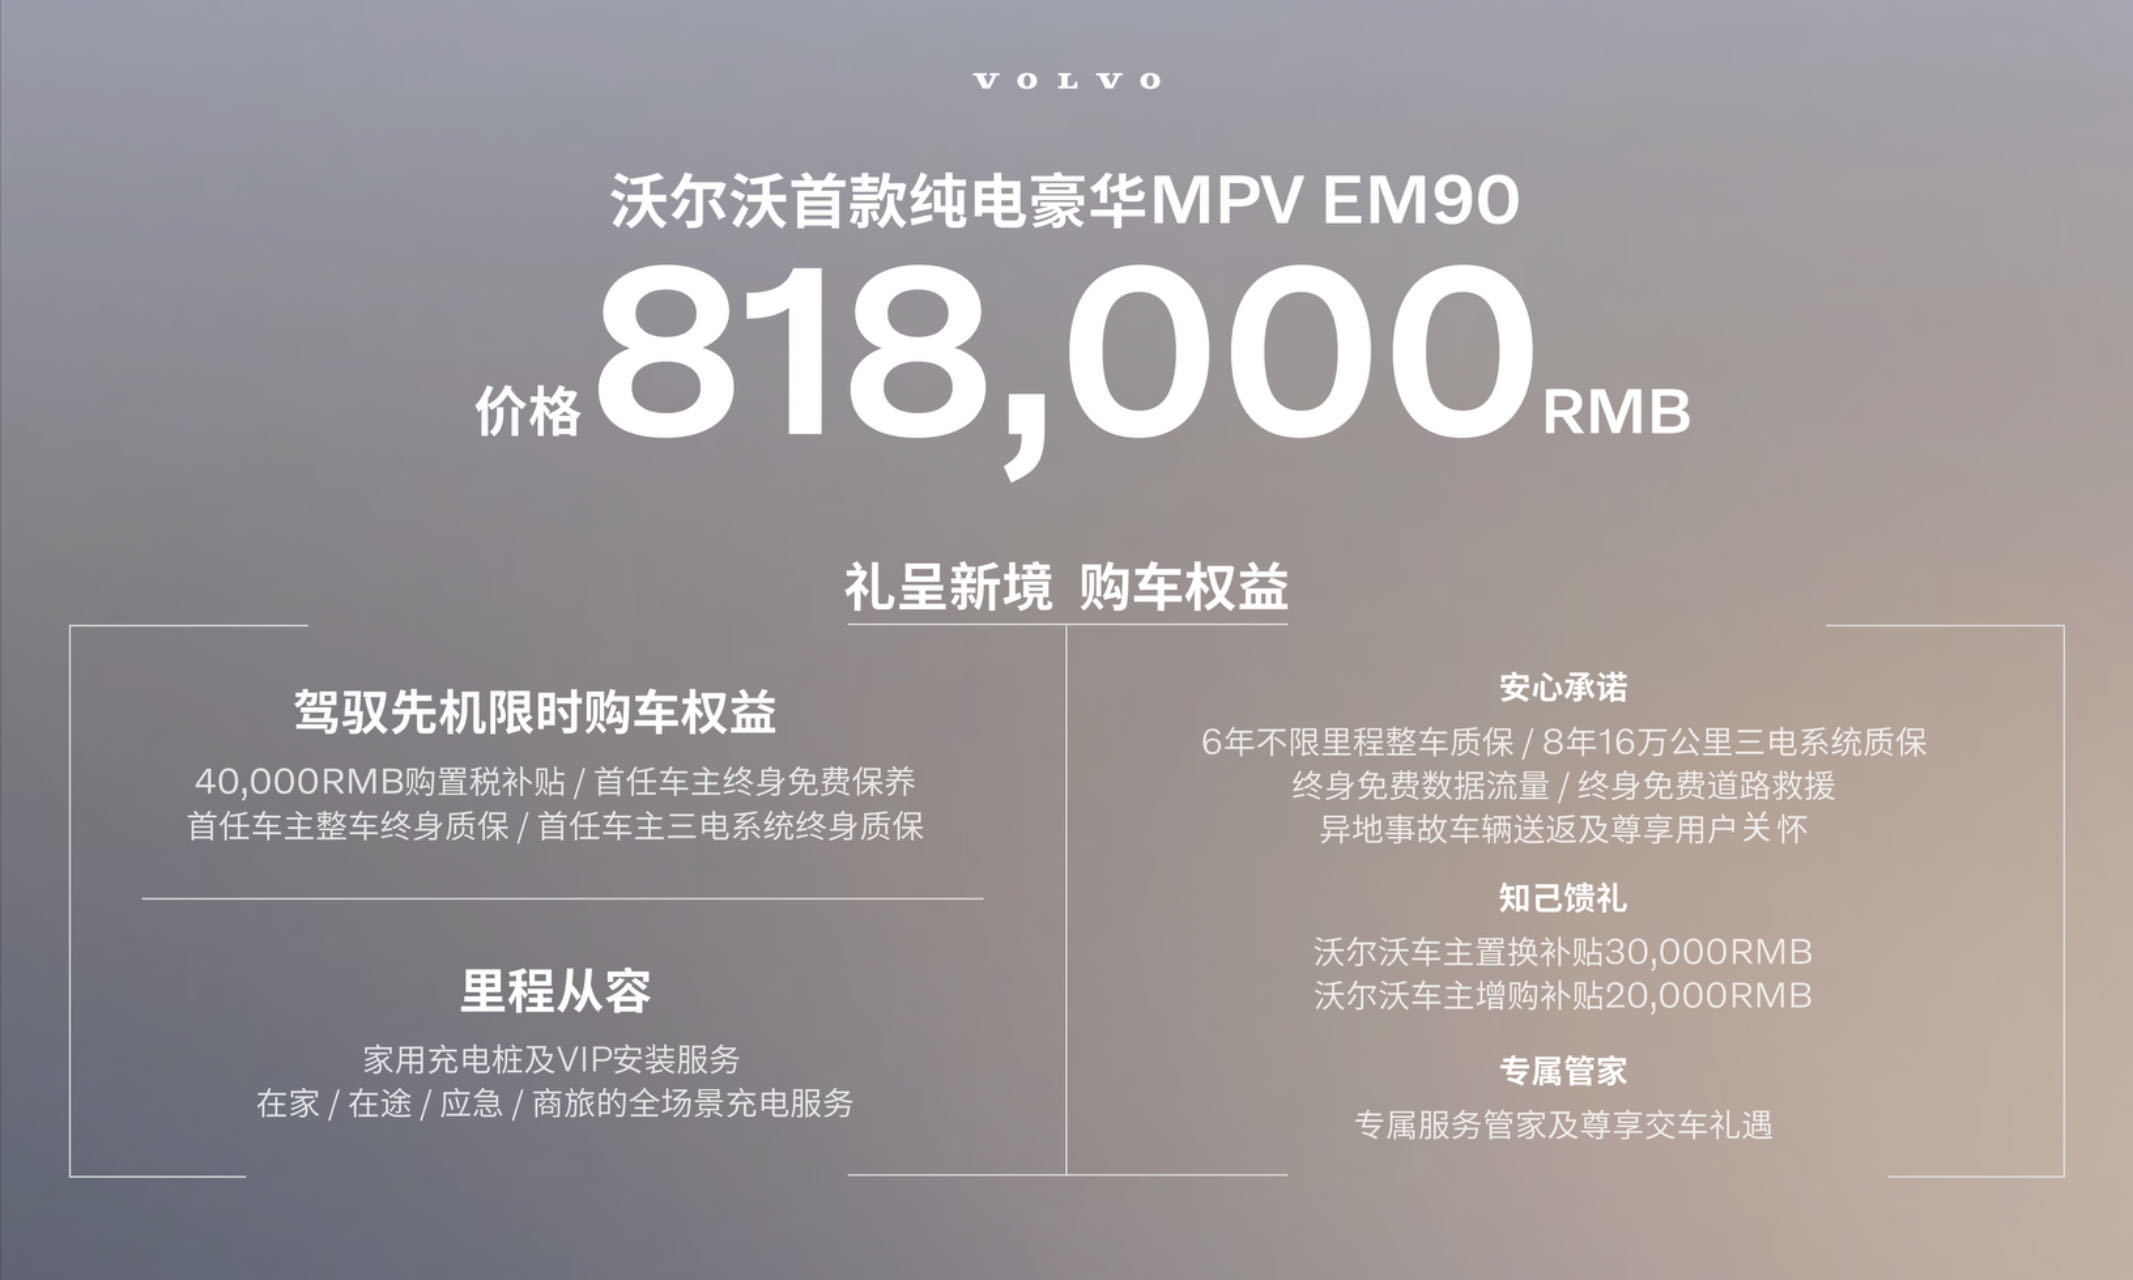 沃尔沃EM90正式上市 售价81.8万元